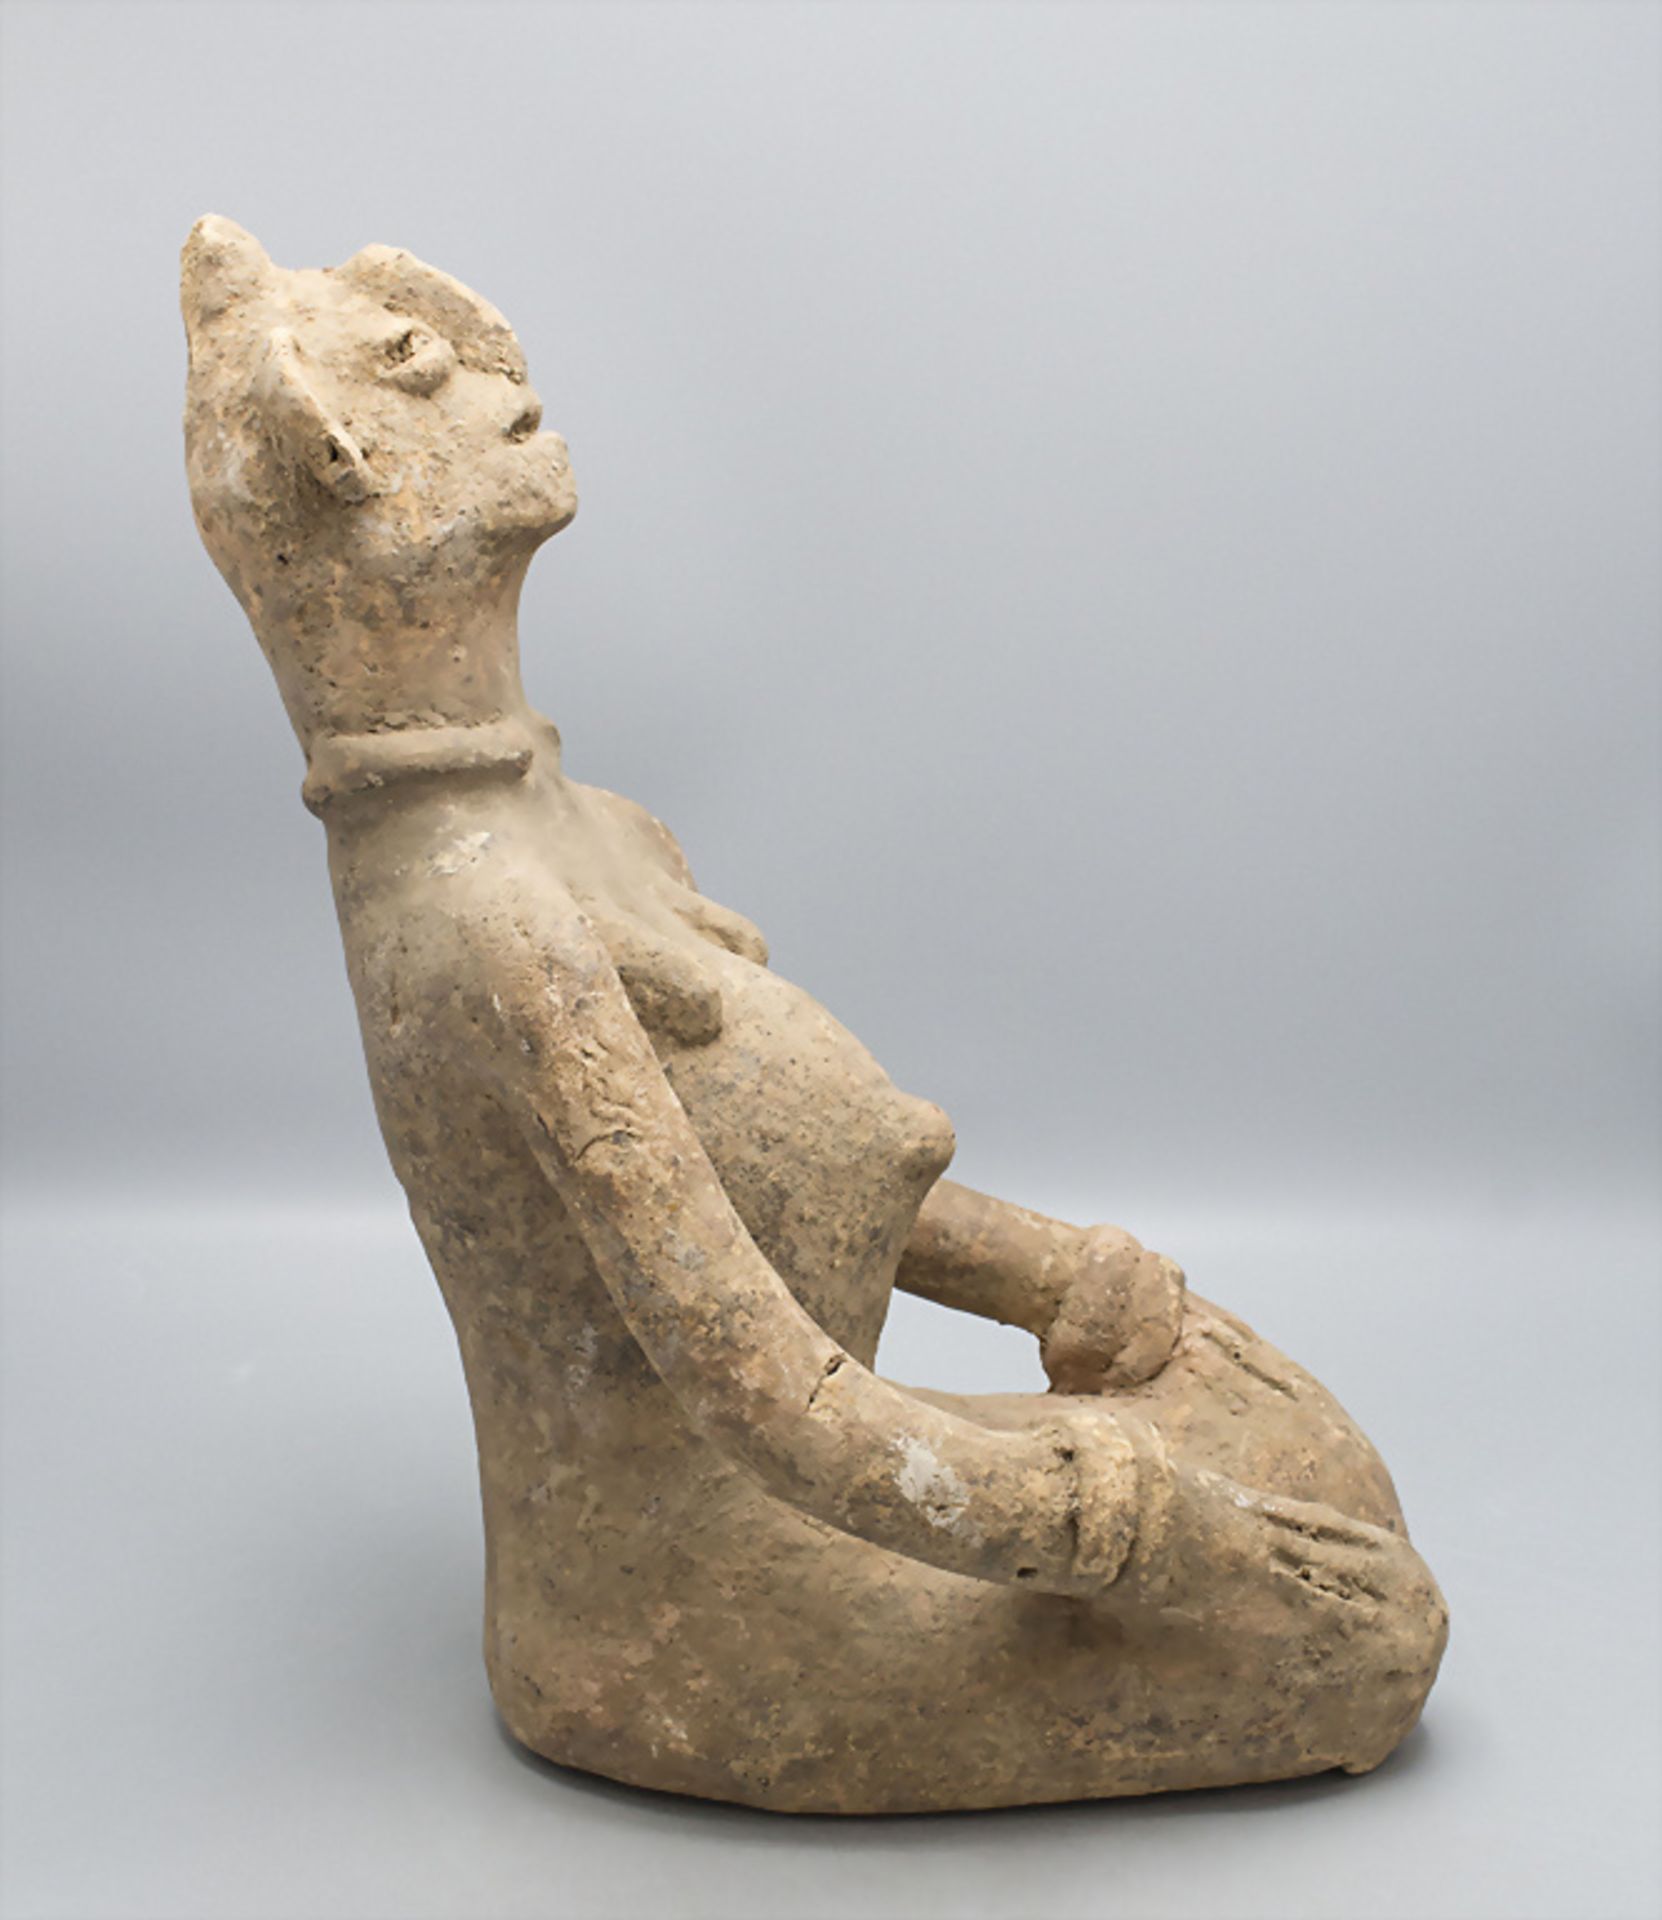 Knieende Terracotta Skulptur vom Stamm der Bankoni, Mali, wohl 19. Jh. - Bild 2 aus 5